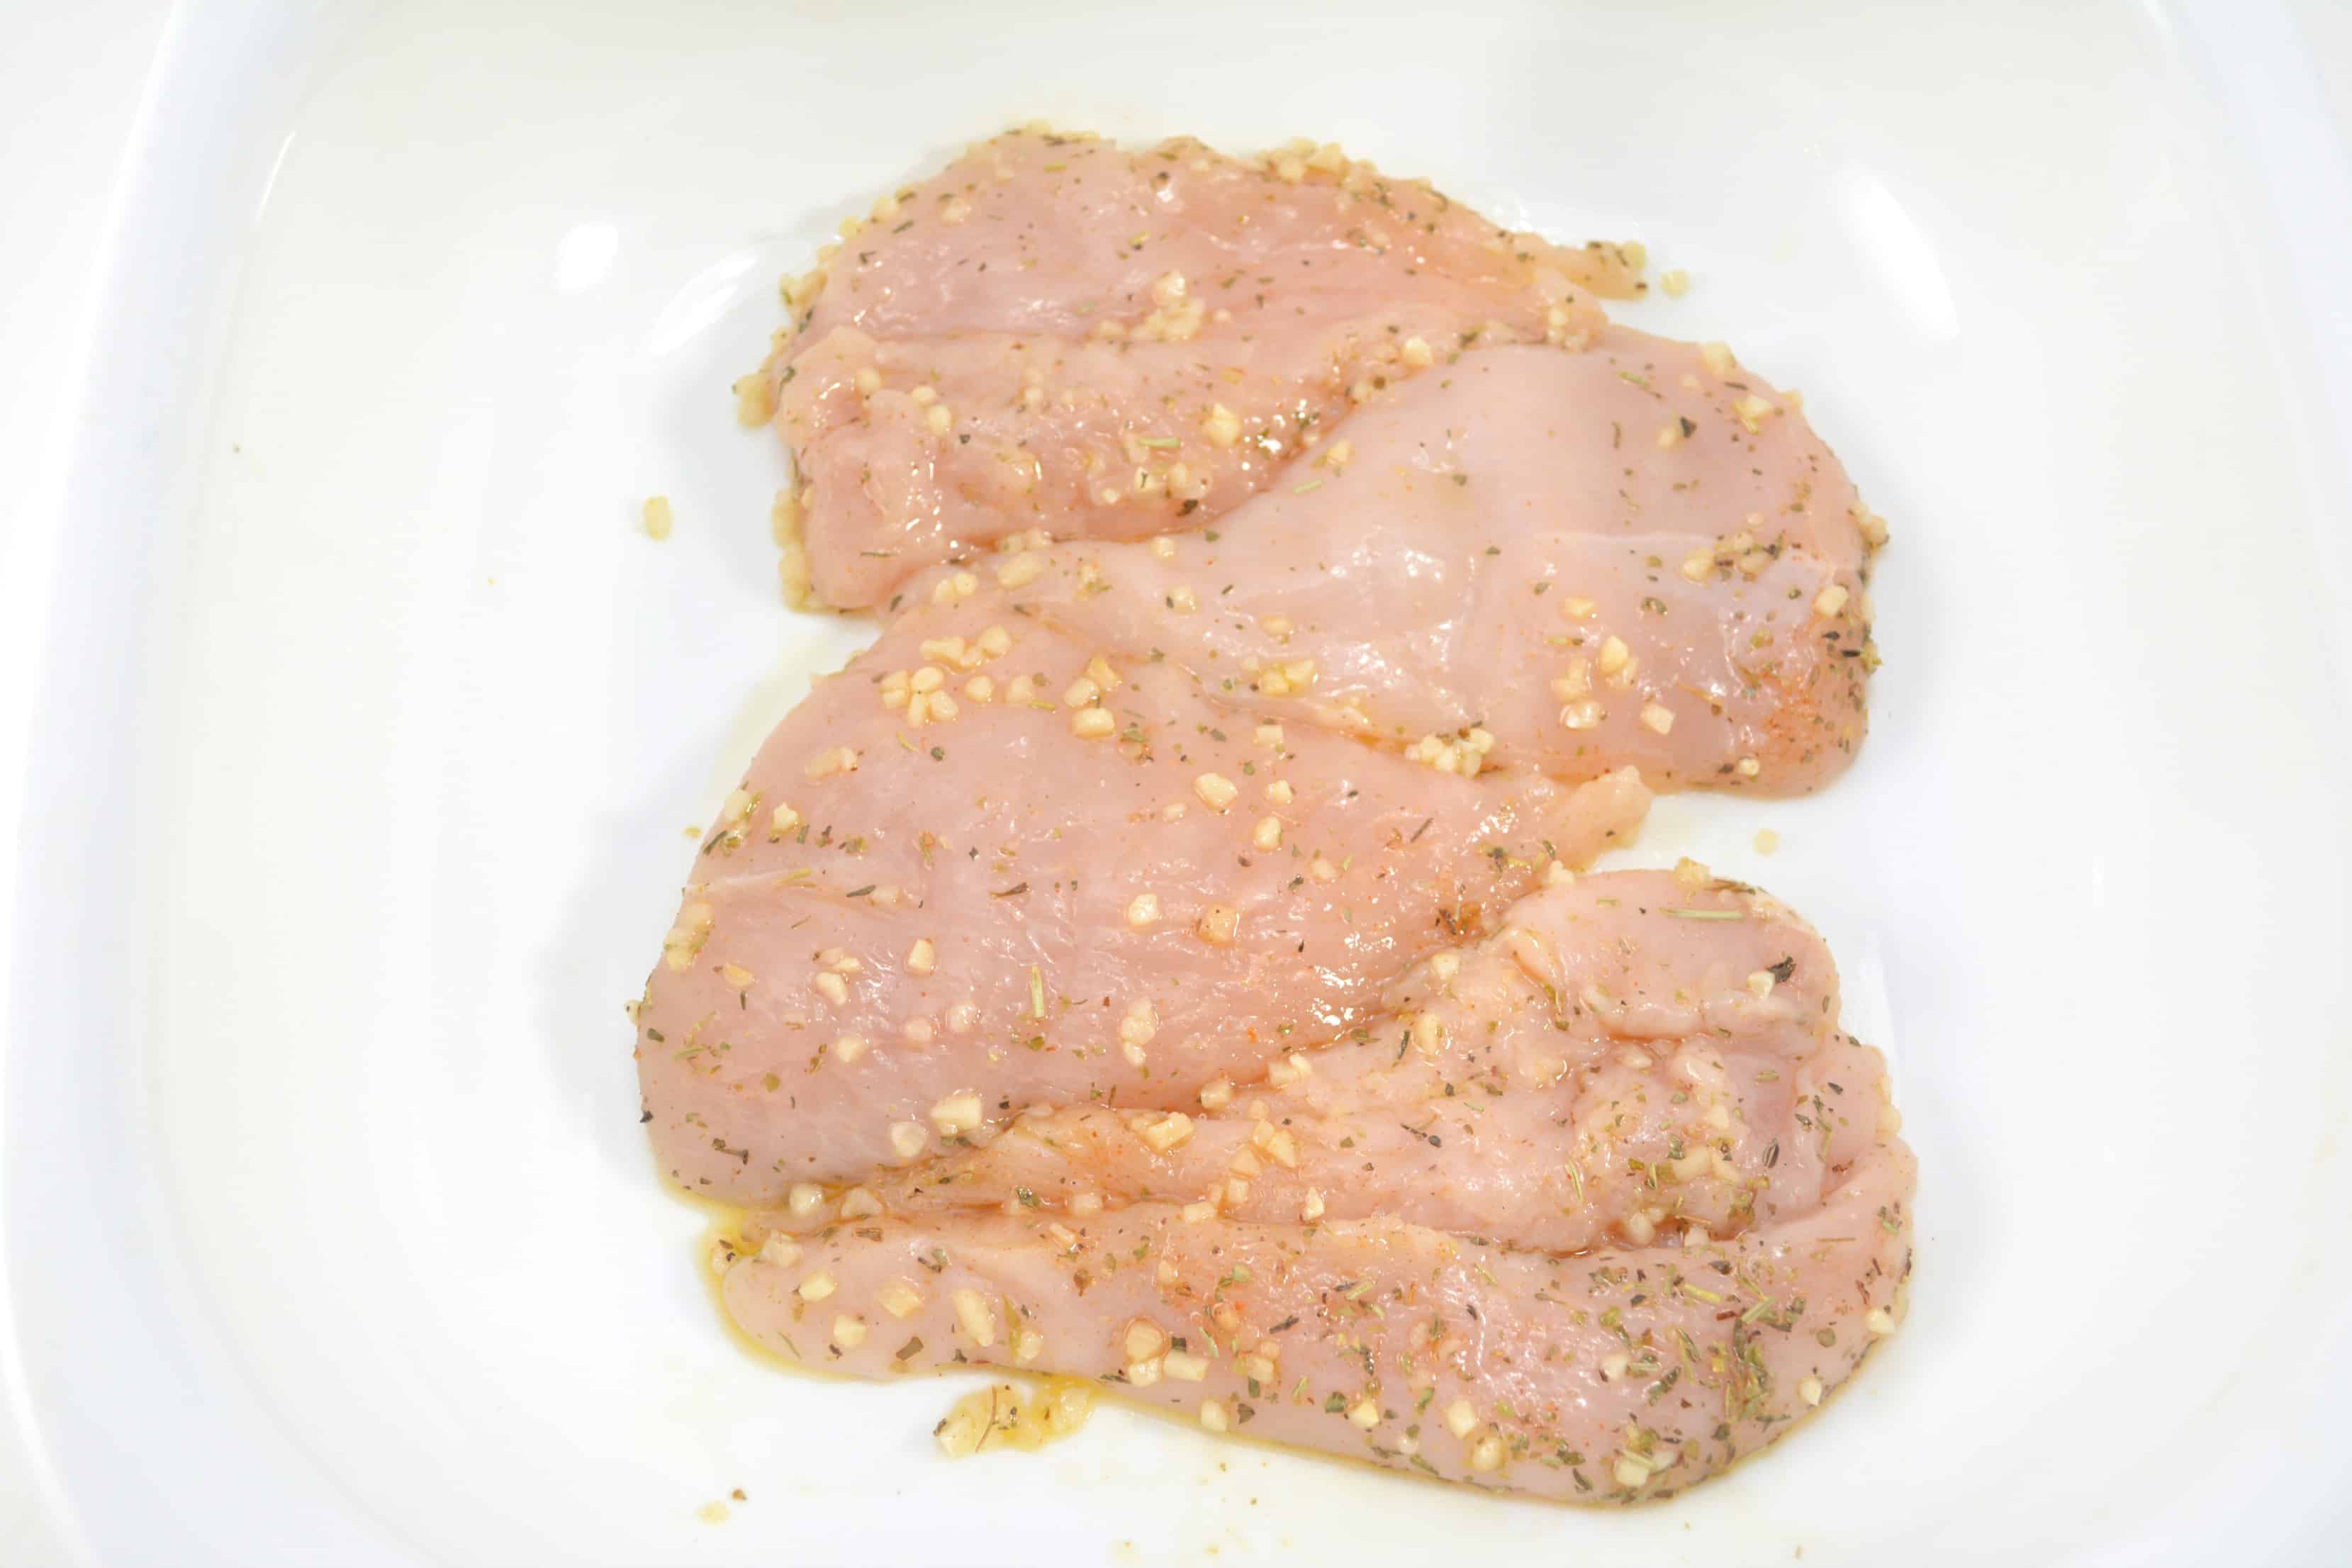 seasoned chicken breasts in a casserole dish